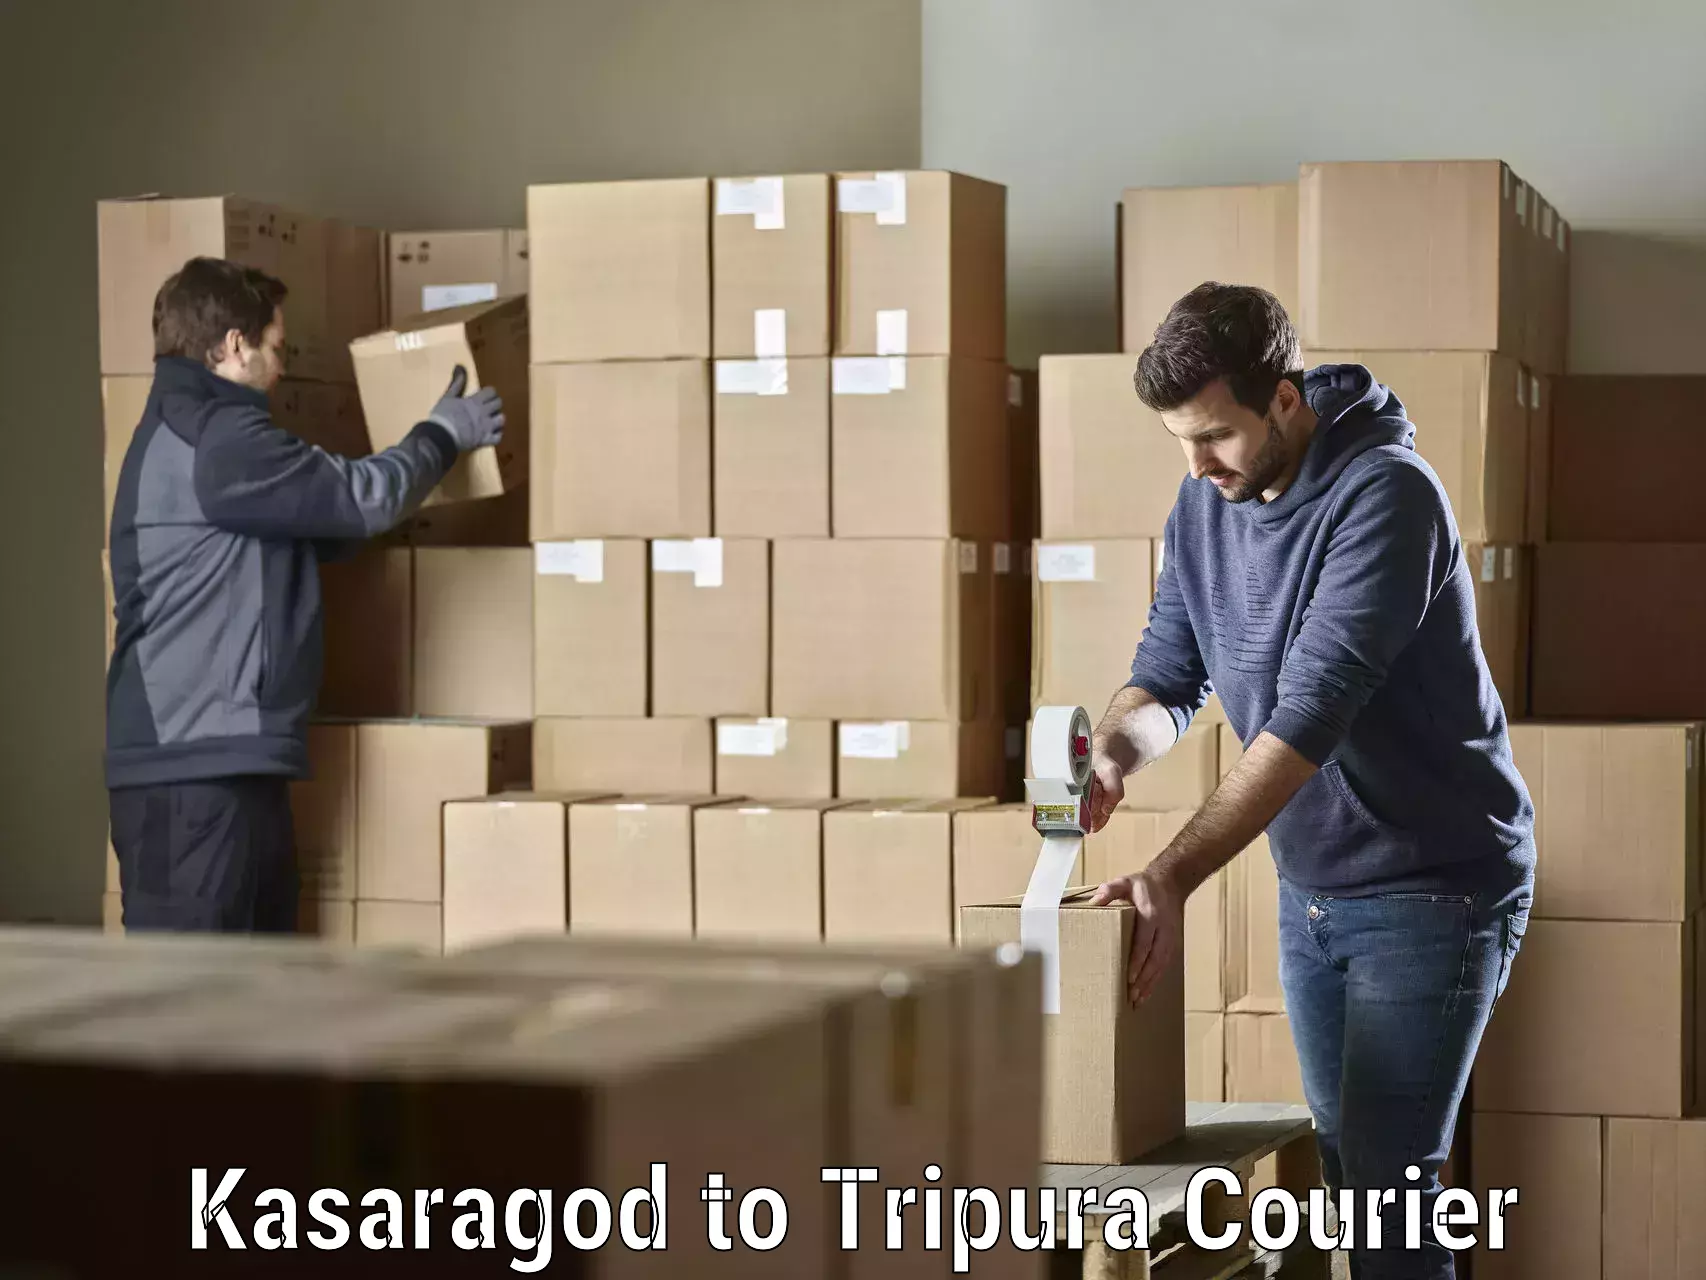 Digital courier platforms Kasaragod to Aambasa